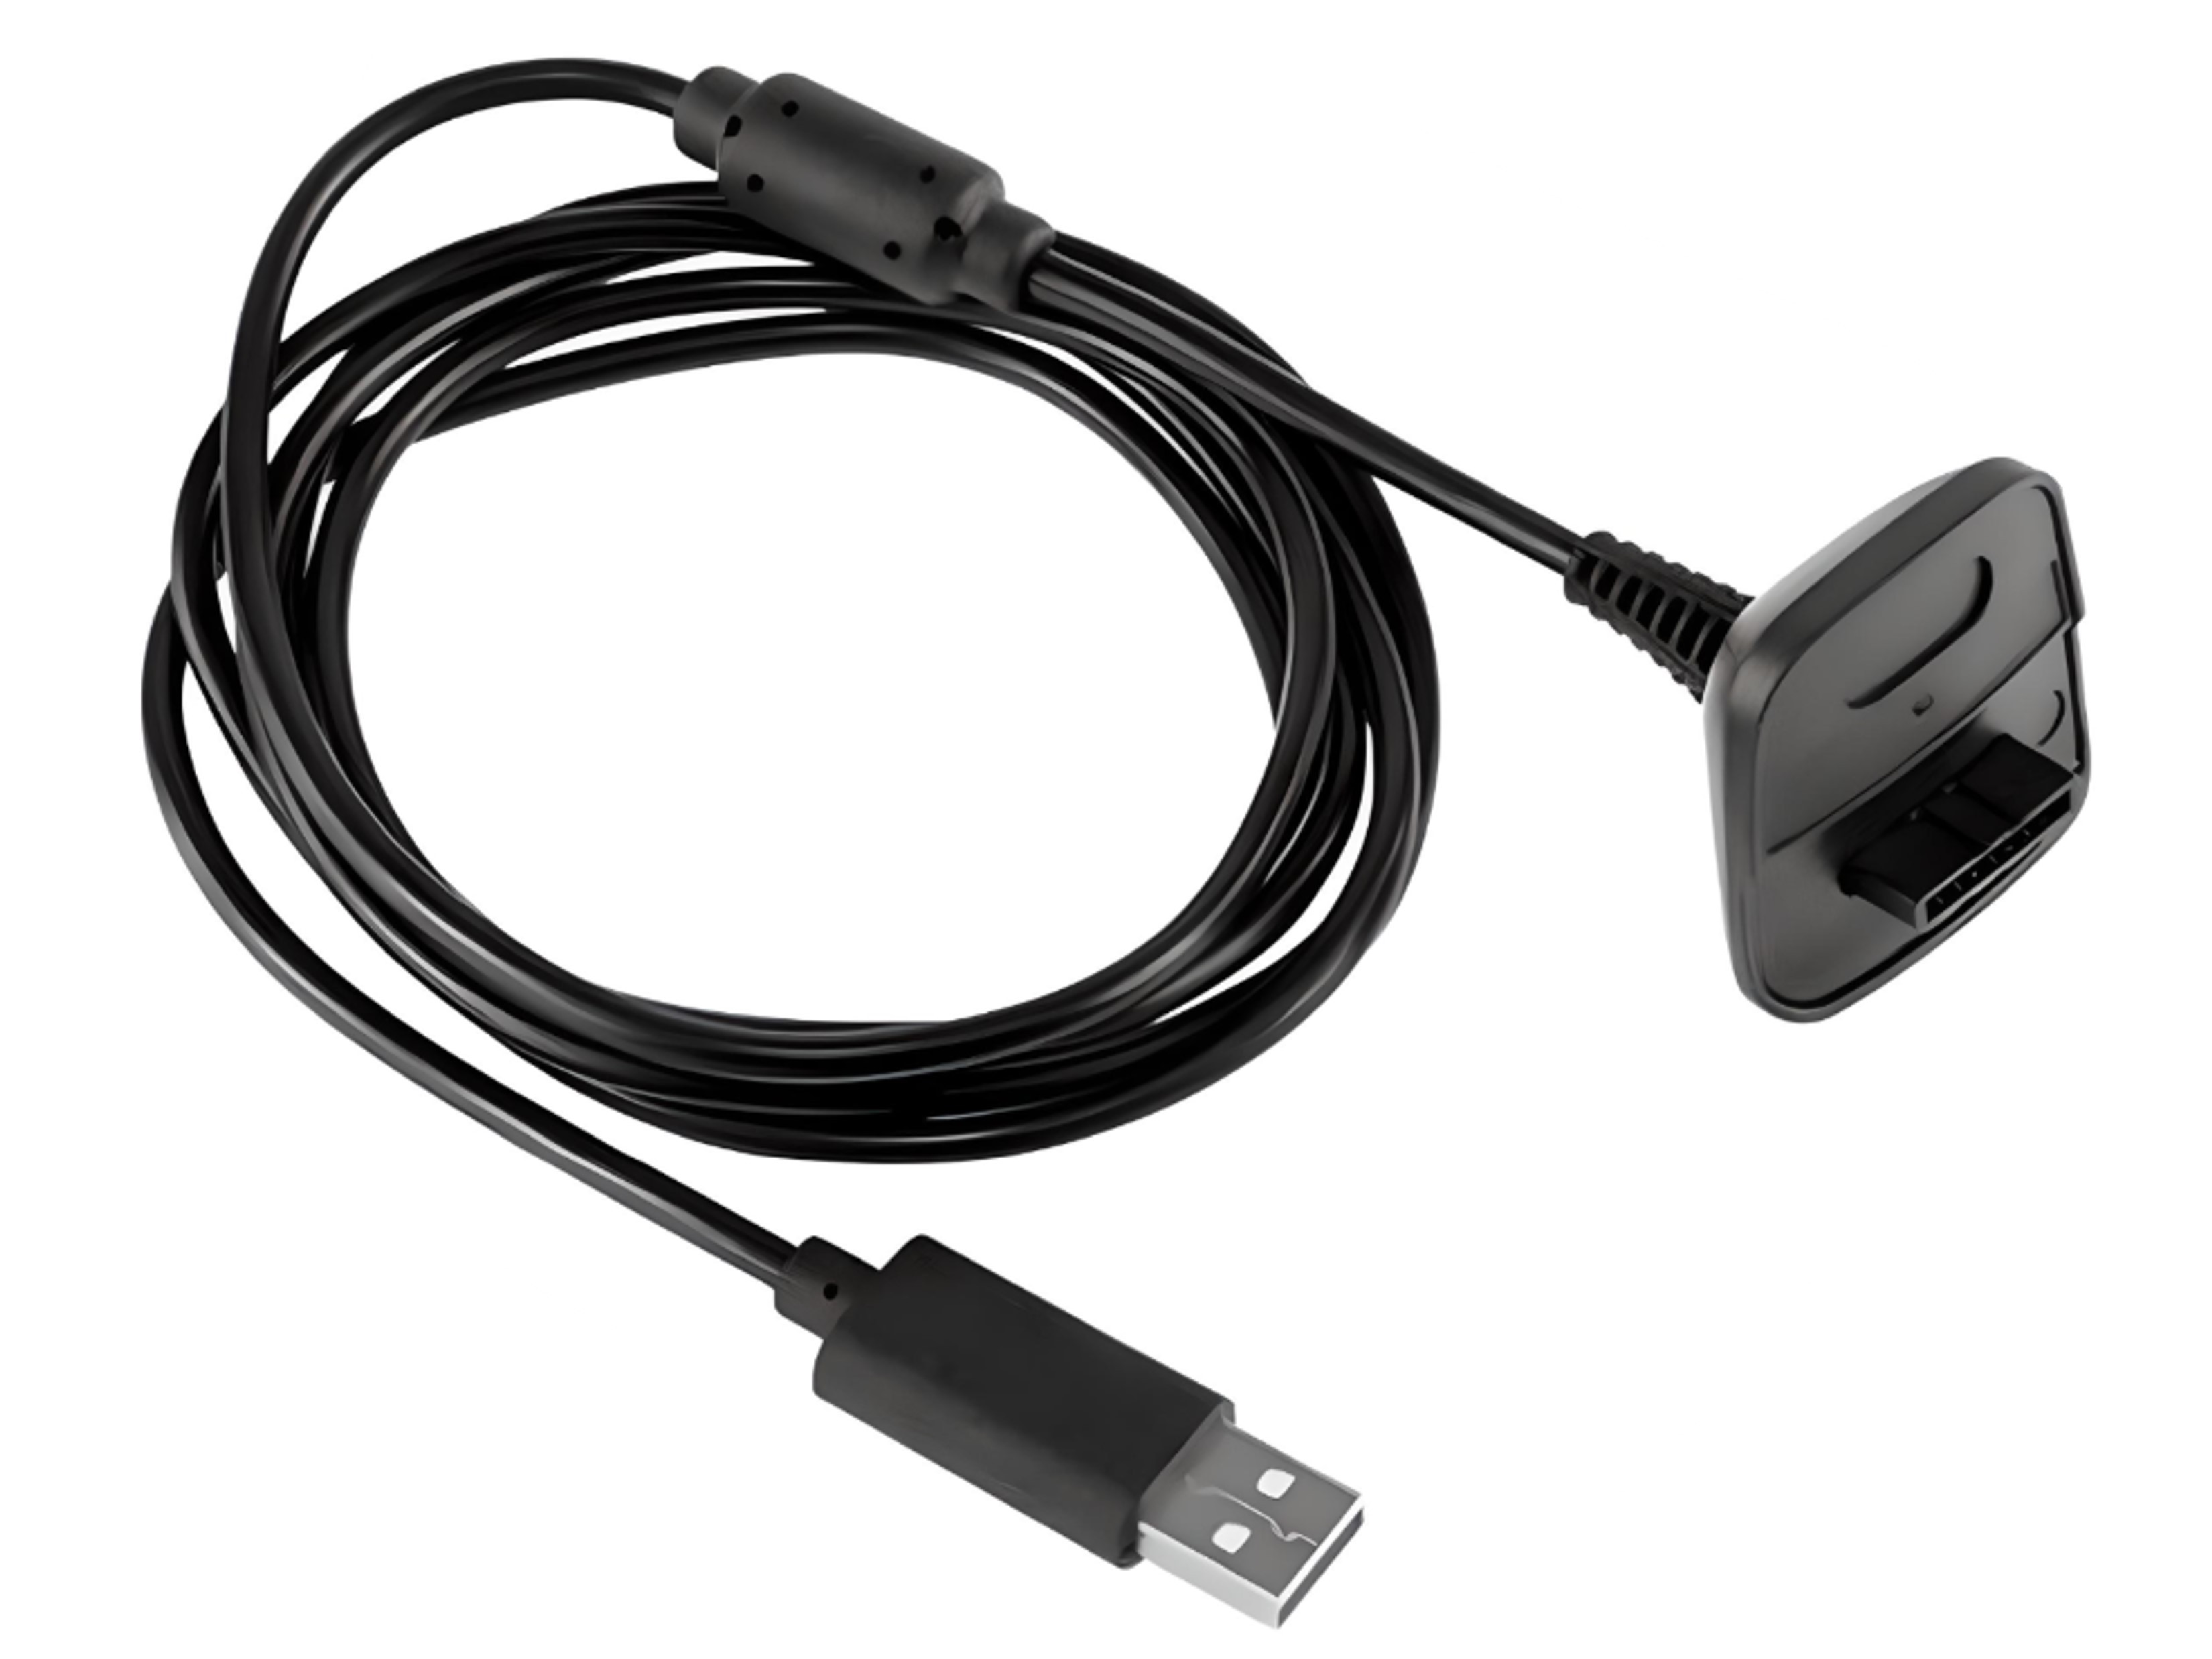 Nieuwe Play & Charge Kabel voor de Xbox 360 Controller Kopen | Xbox 360 Hardware